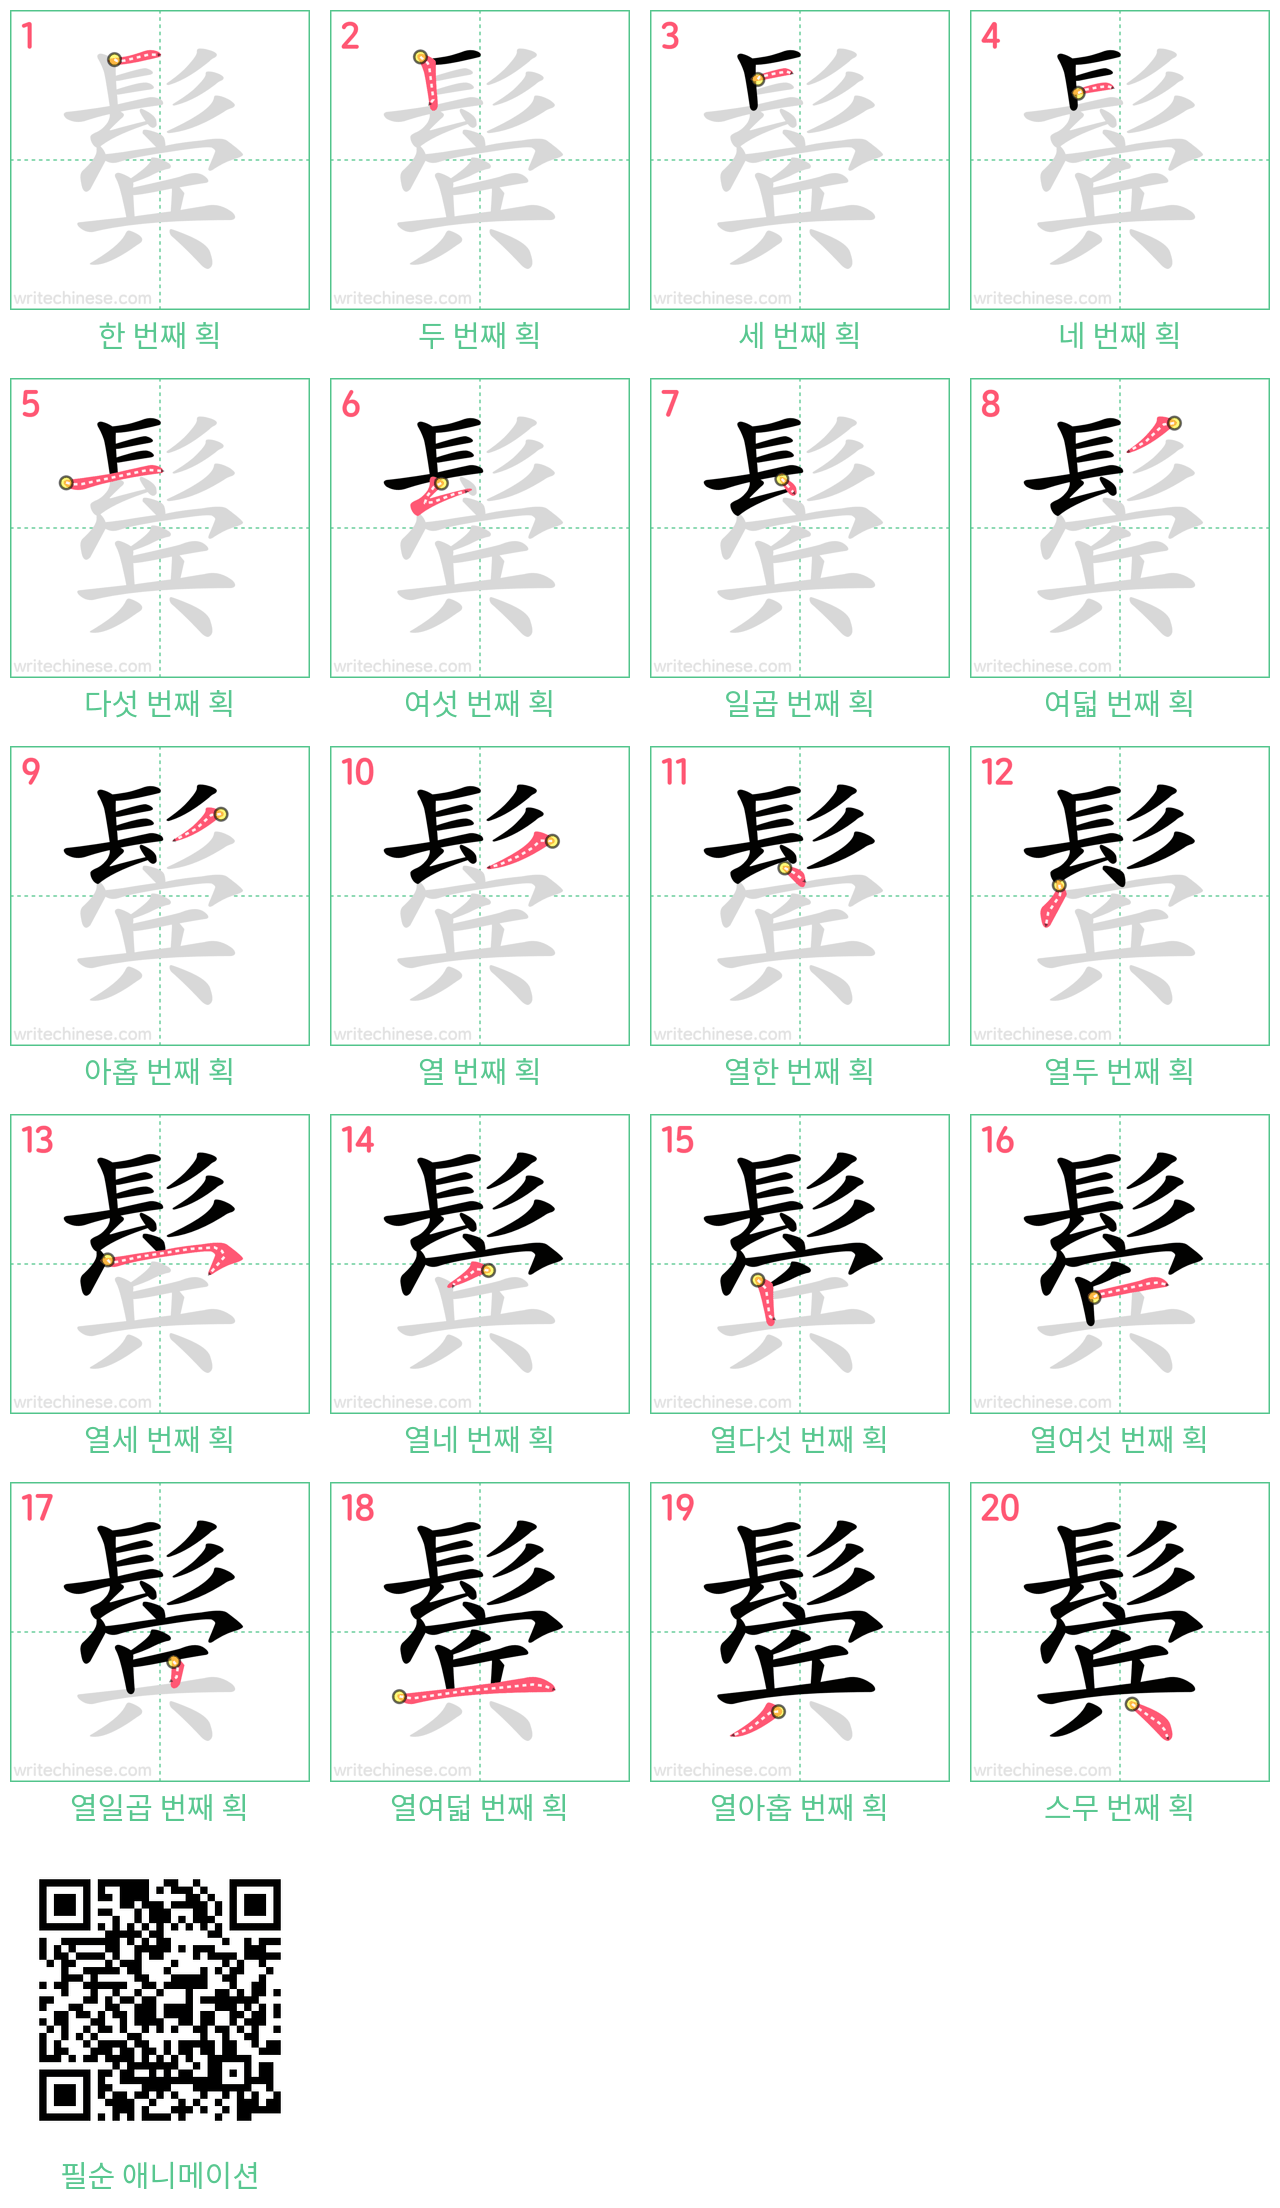 鬓 step-by-step stroke order diagrams